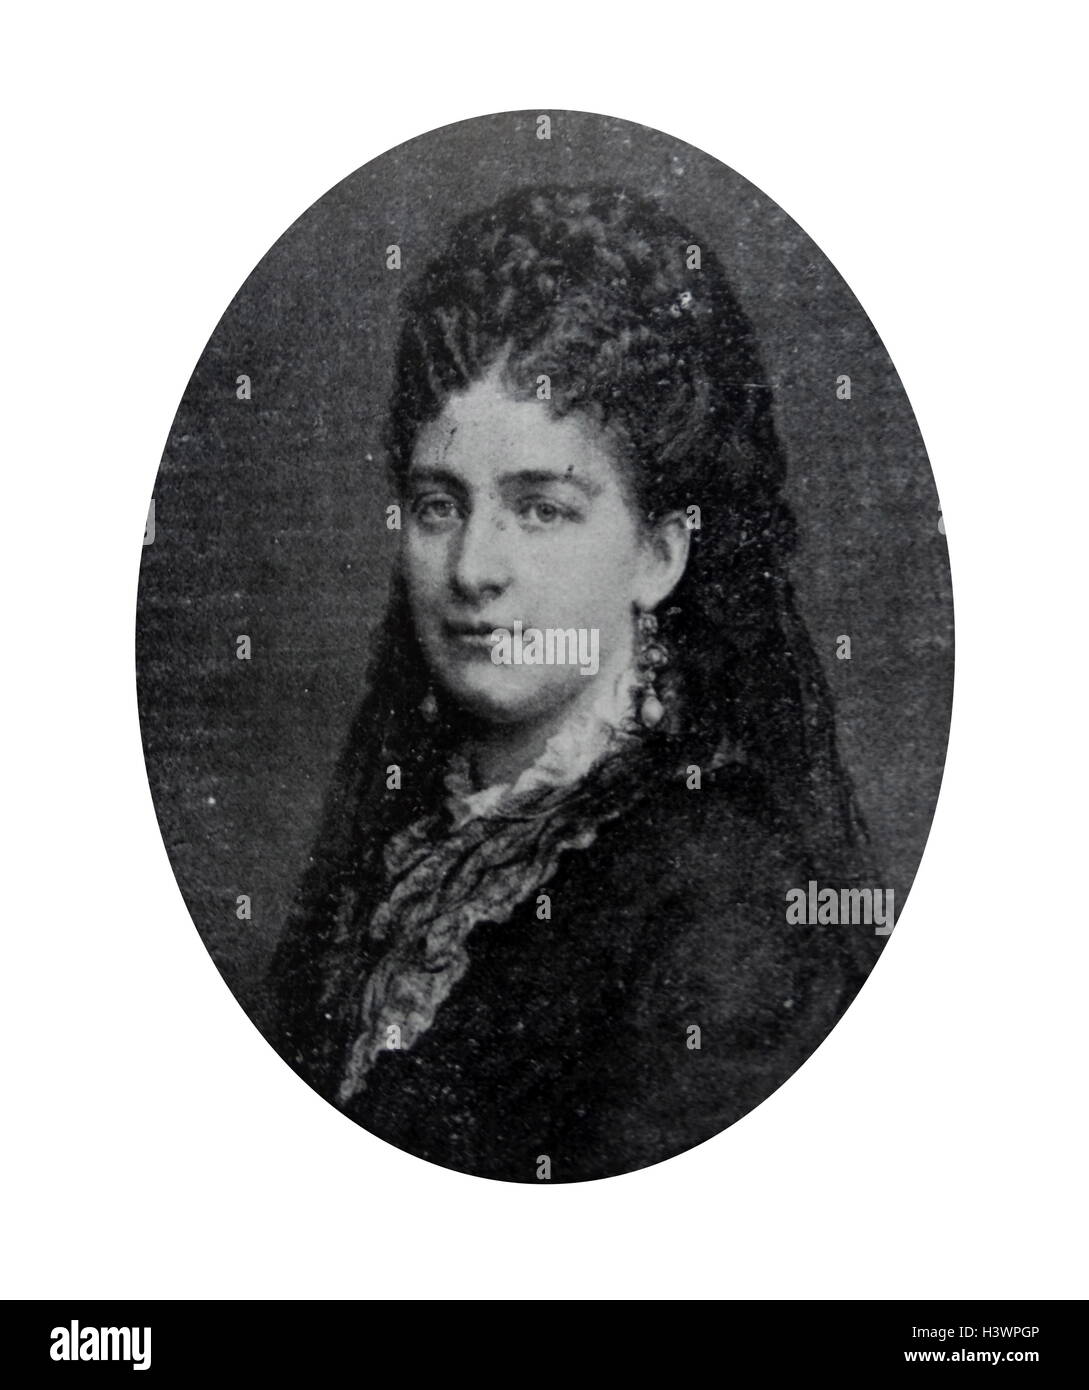 Maria Vittoria dal Pozzo (Maria Vittoria Carlotta Enrichetta ; 9 Août 1847 - 8 novembre 1876). La noblesse italienne et était la princesse della Cisterna dans son propre droit. Marié à Amedeo de Savoie, Duc d'Aoste, elle a plus tard la reine d'Espagne à partir de 1870 jusqu'à son abdication en 1873. Banque D'Images